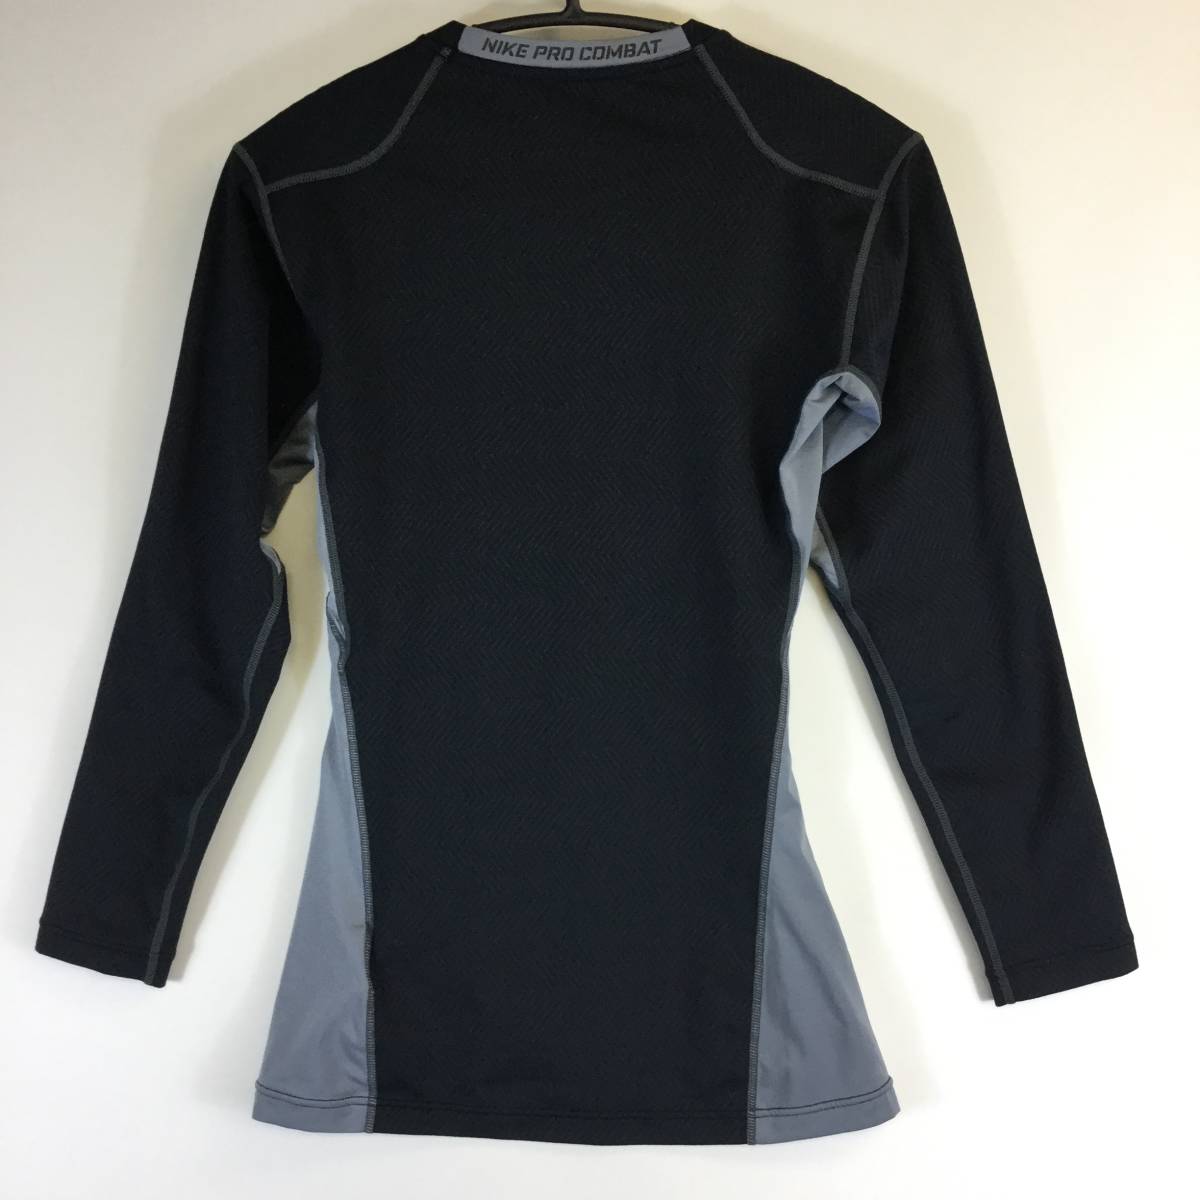 ナイキプロコンバット NIKE PRO COMBAT インナーコンプレッションシャツ 長袖 Lサイズ ブラック グレー 